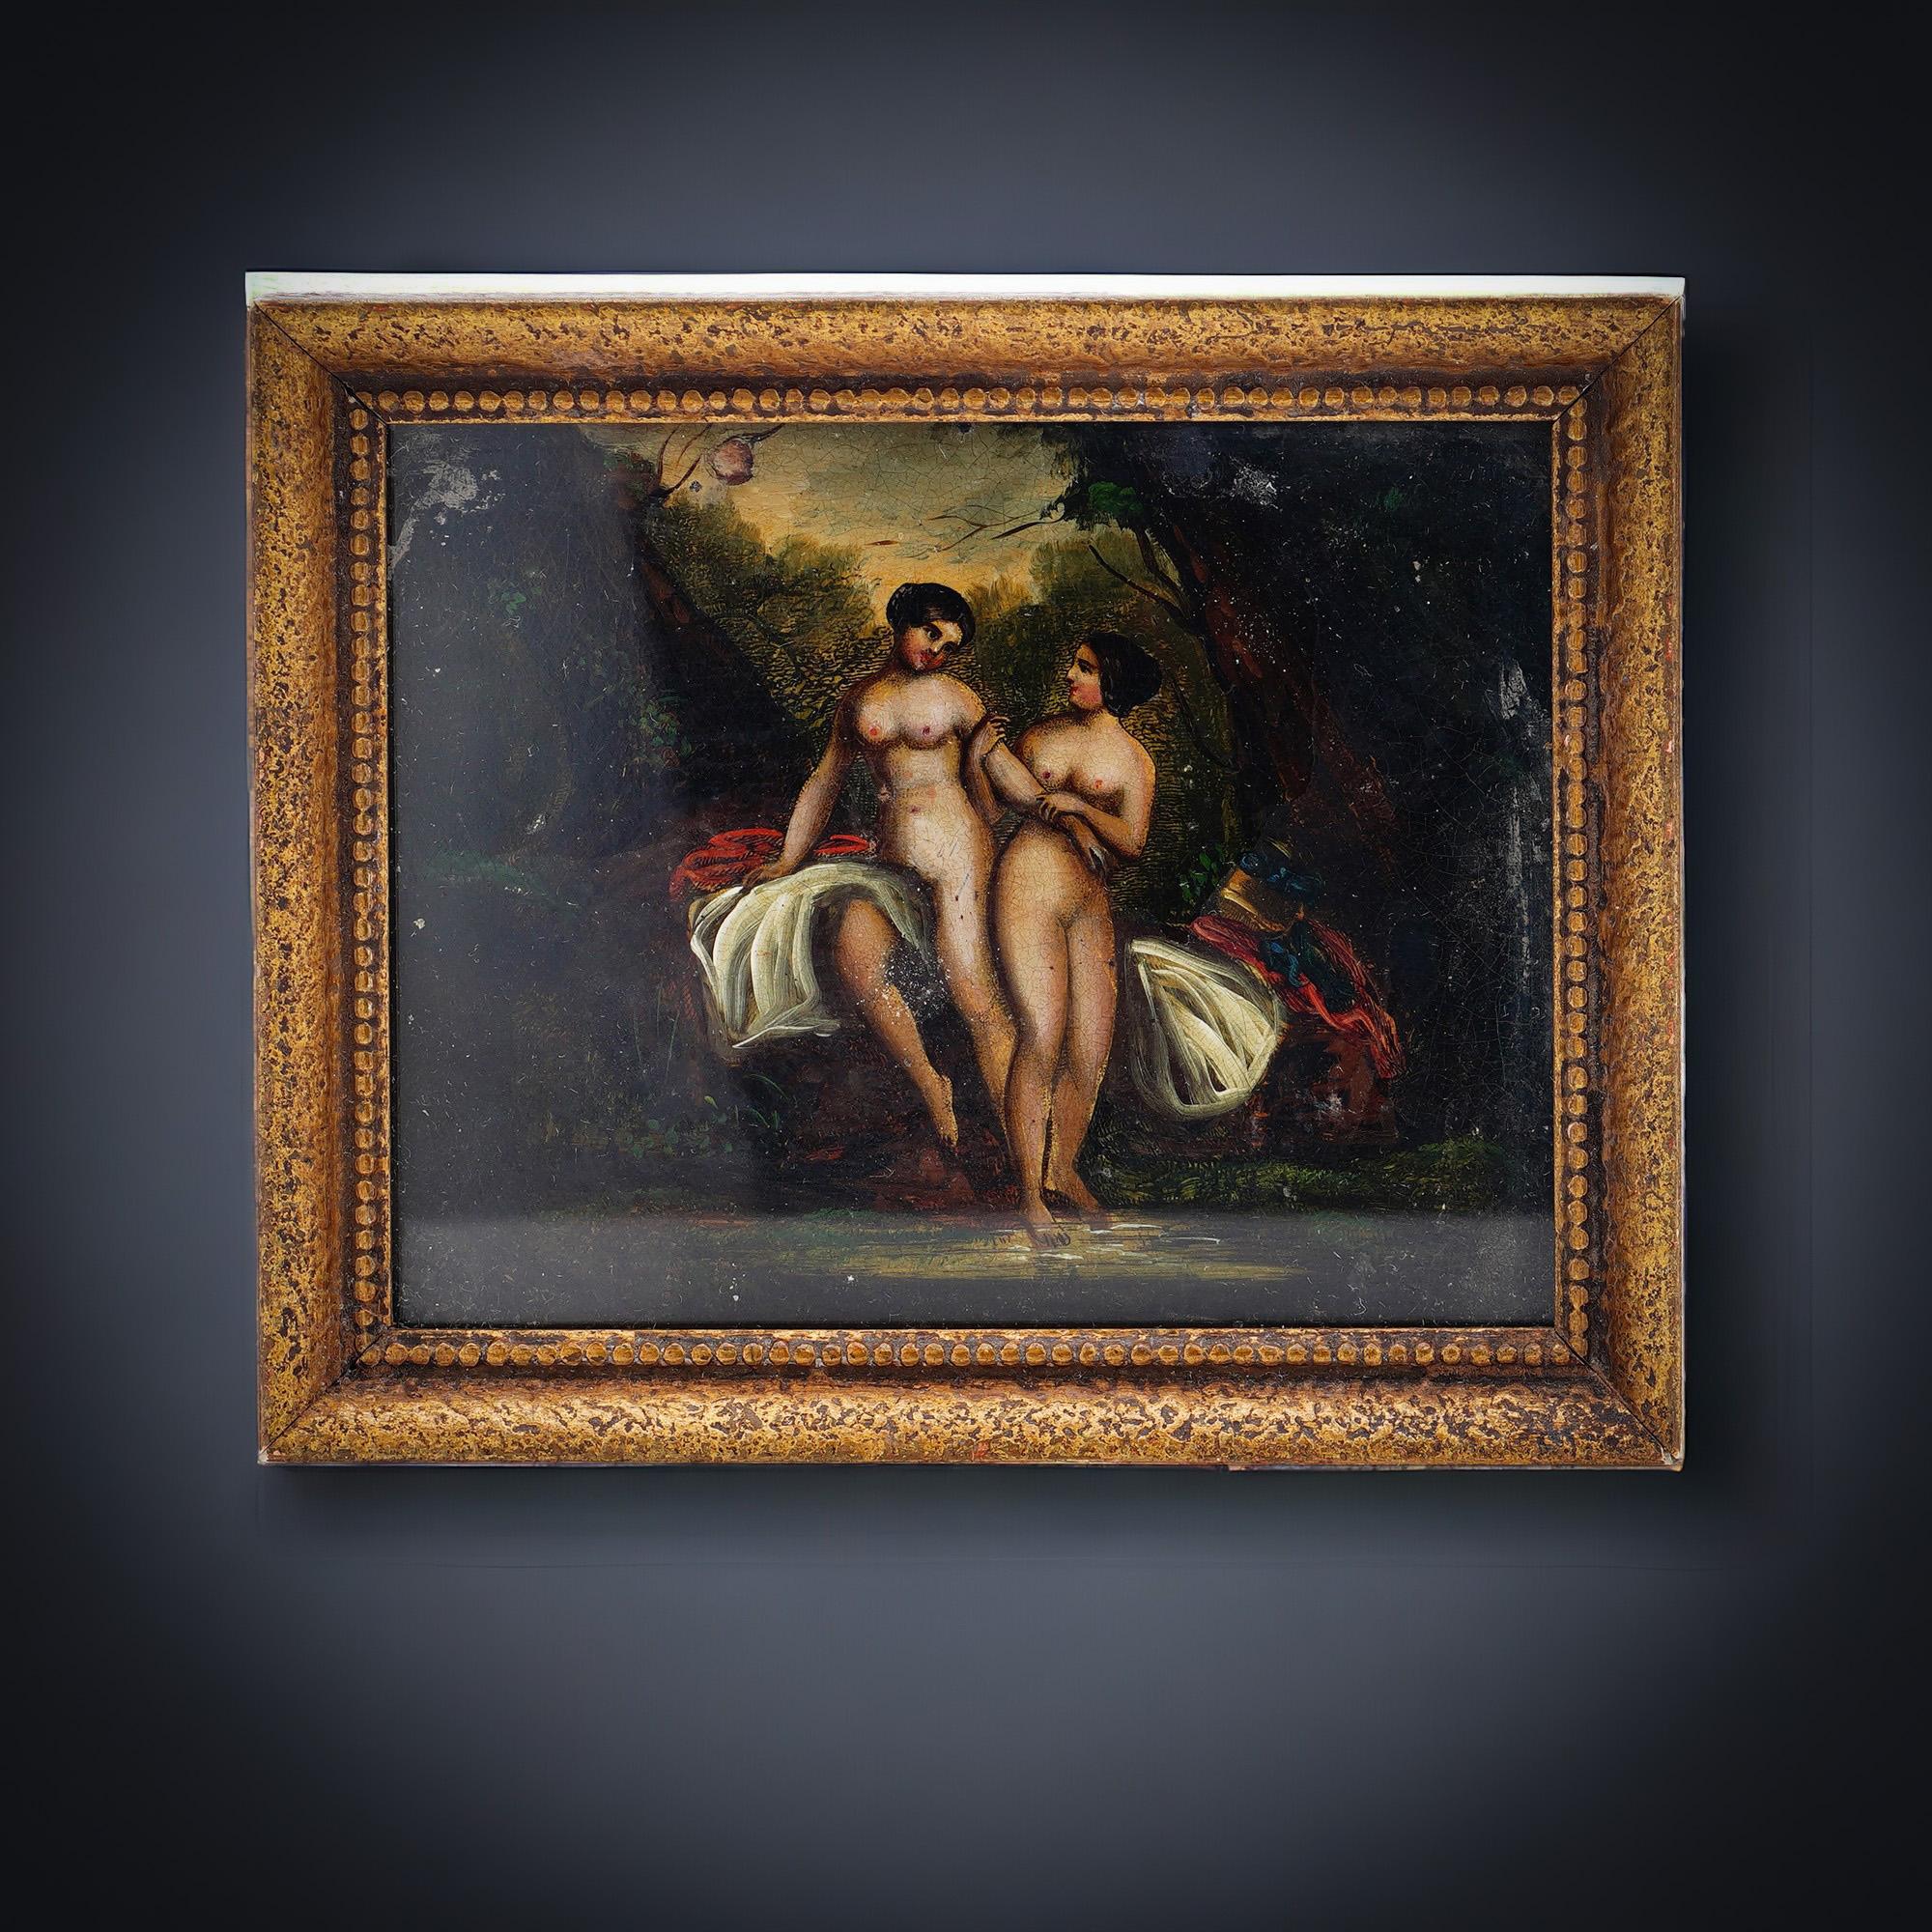 Peinture ancienne du 19ème siècle, huile sur étain ''Deux nus dans la nature''

Dimensions :
Taille de l'image : 11 x 8,5 x 8,5 cm 
Poids : 118 grammes

Condition : La peinture est d'occasion, a l'usure liée à l'âge, des parties mineures des